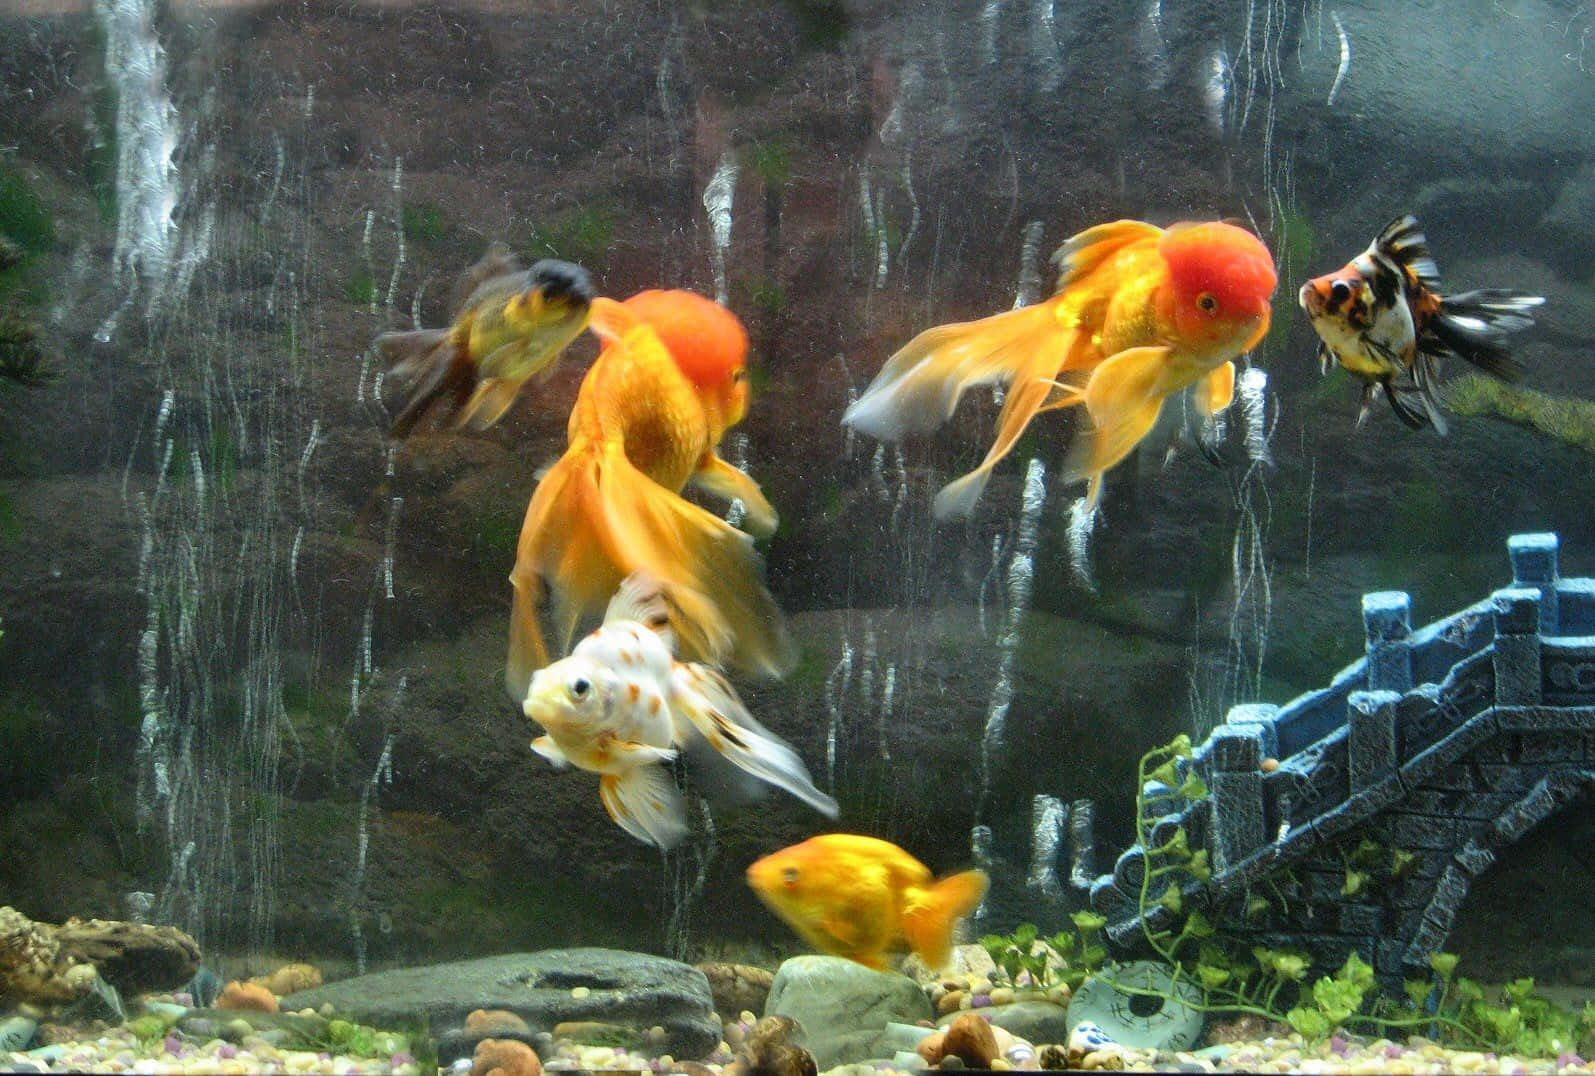 Baggrunds tapet af akvarie med guldfisk arter.